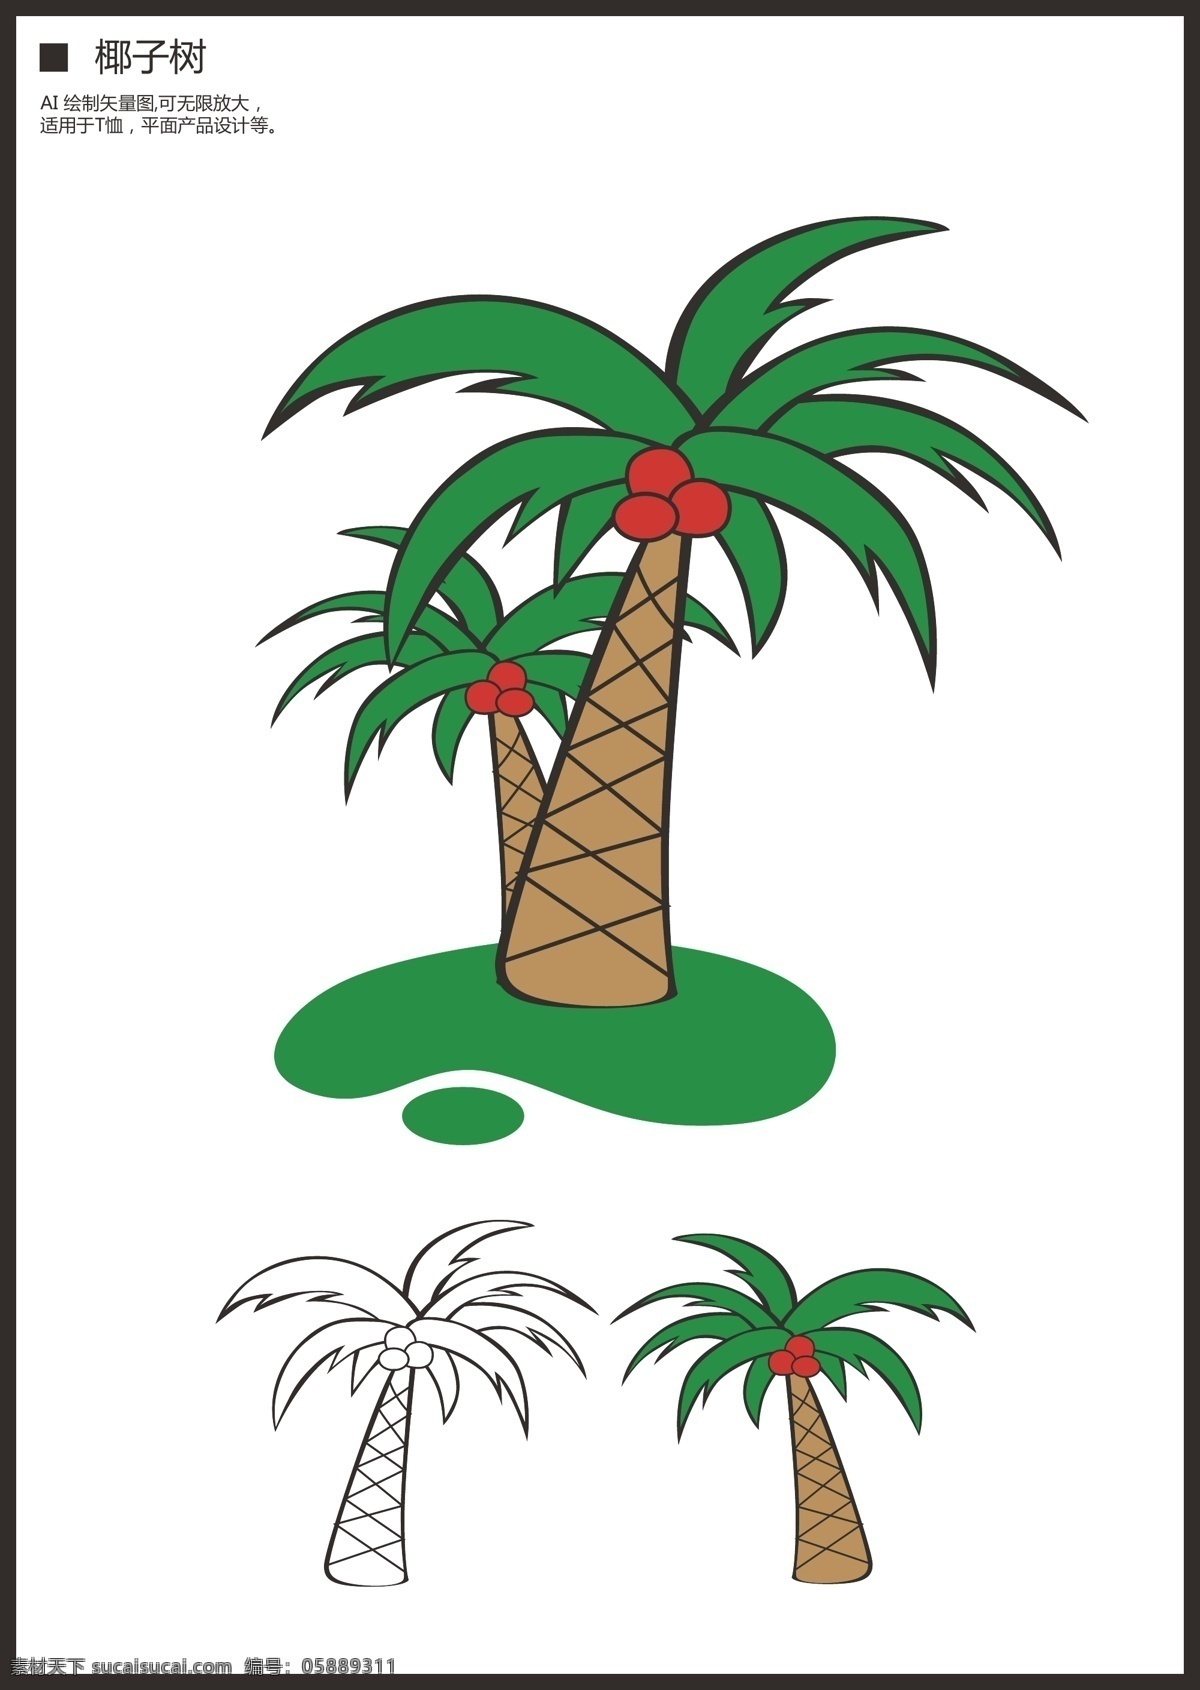 原创 卡通 椰子树 卡通椰子树 卡通椰子 椰子形象 矢量椰子树 矢量卡通 卡通设计